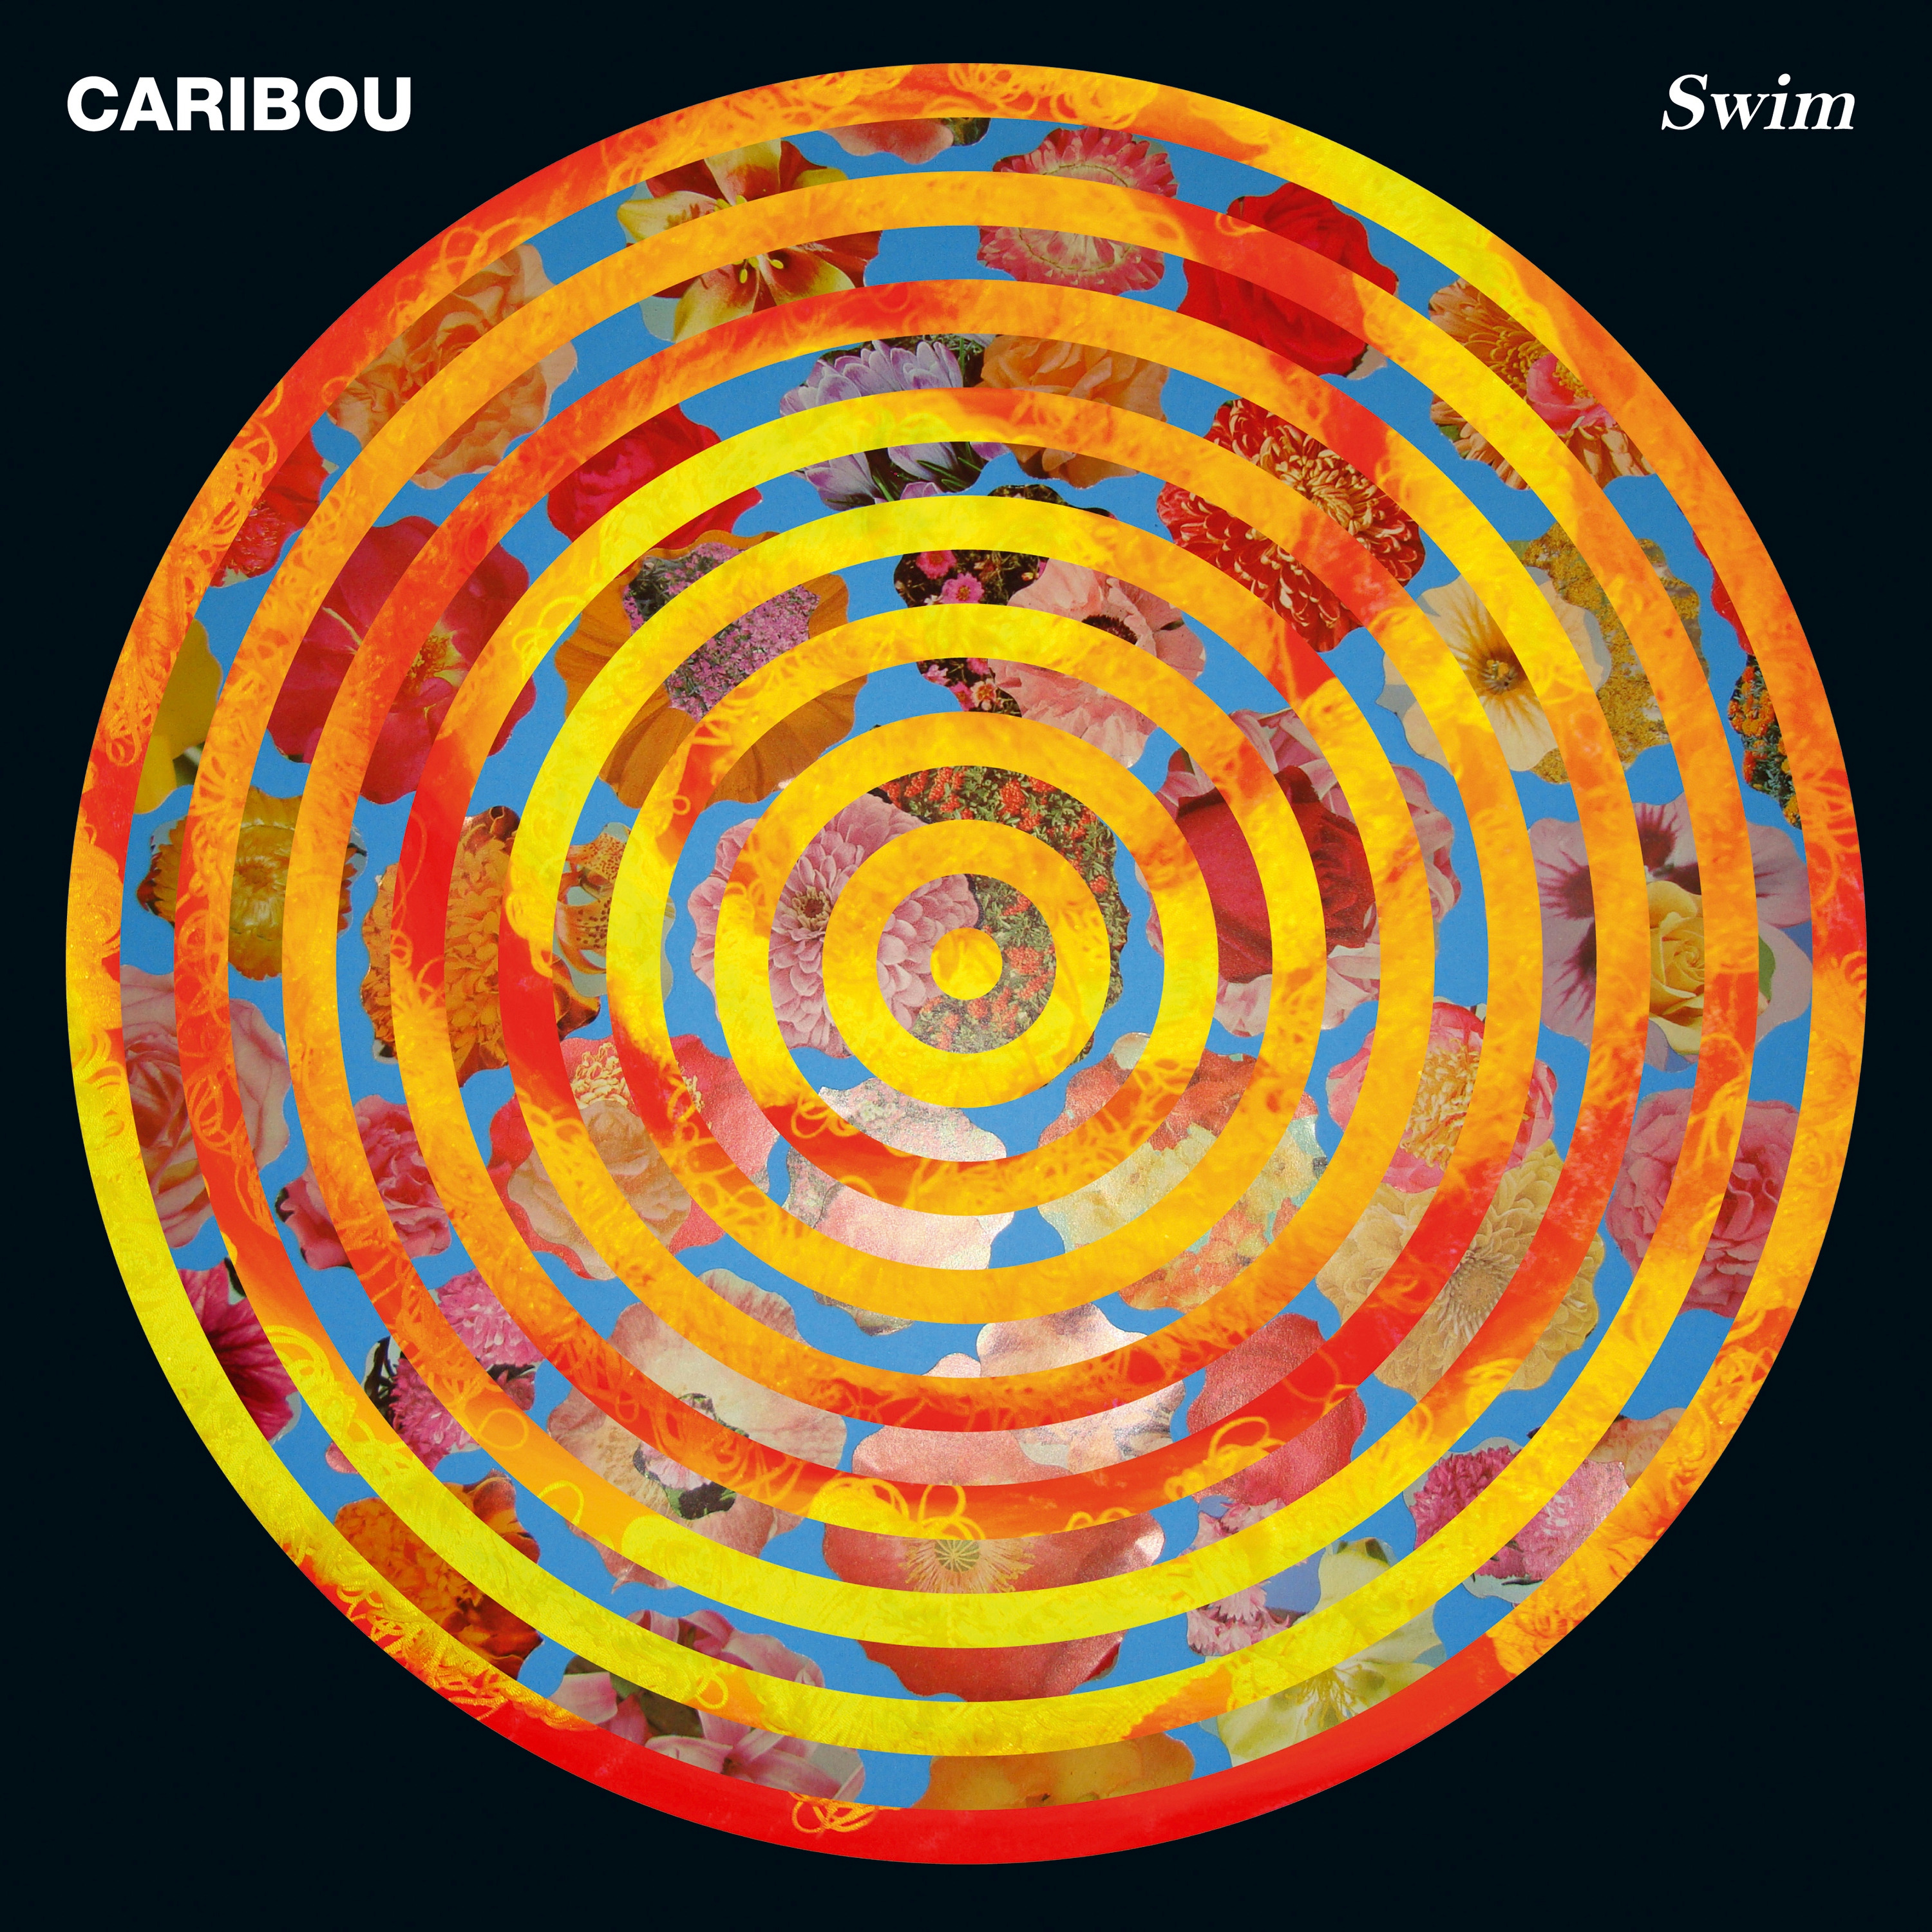 Album artwork for Album artwork for Swim by Caribou by Swim - Caribou